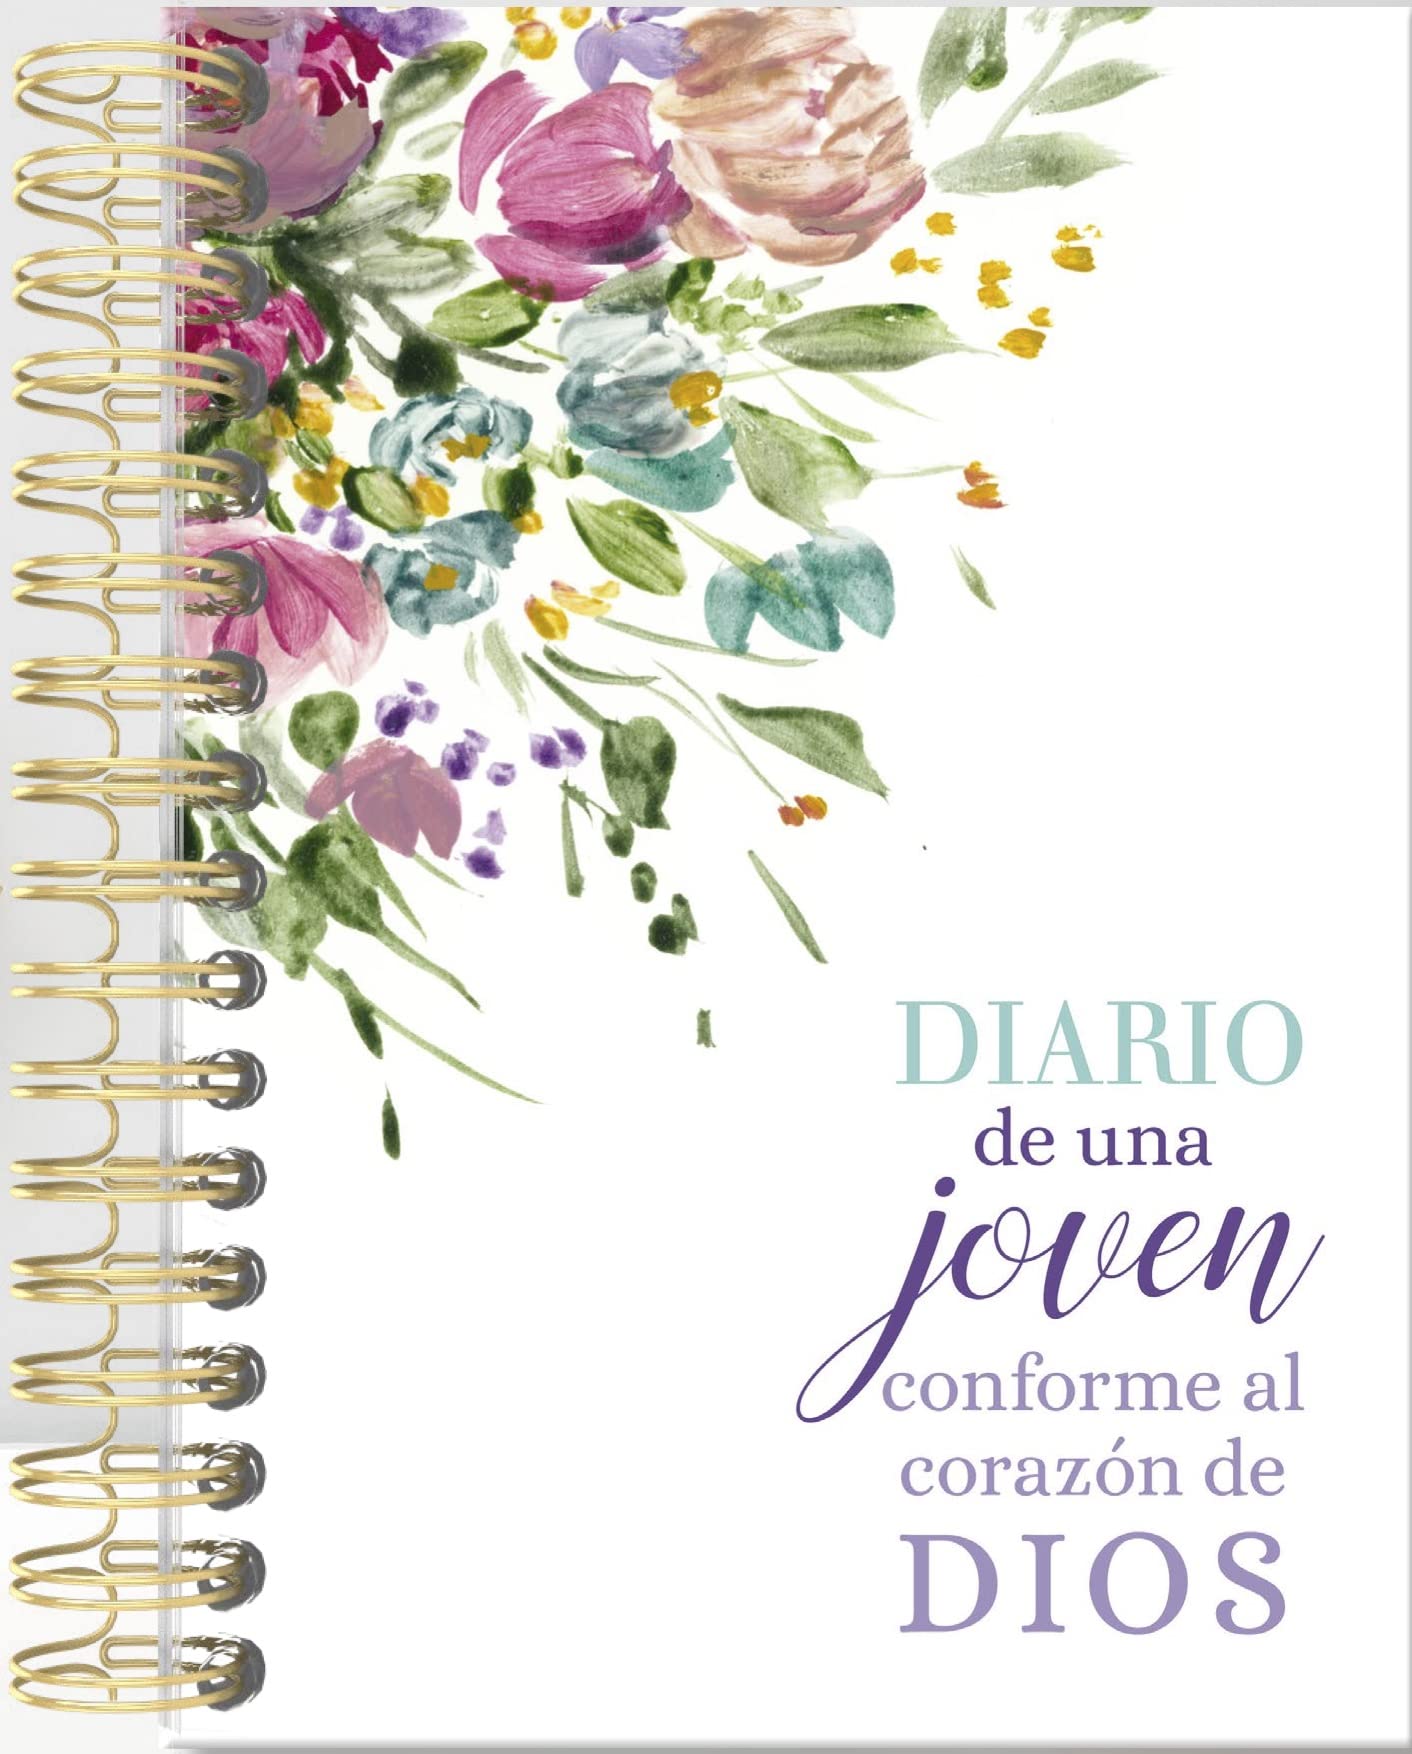 Diario de una joven conforme al corazón de Dios (Spanish Edition)